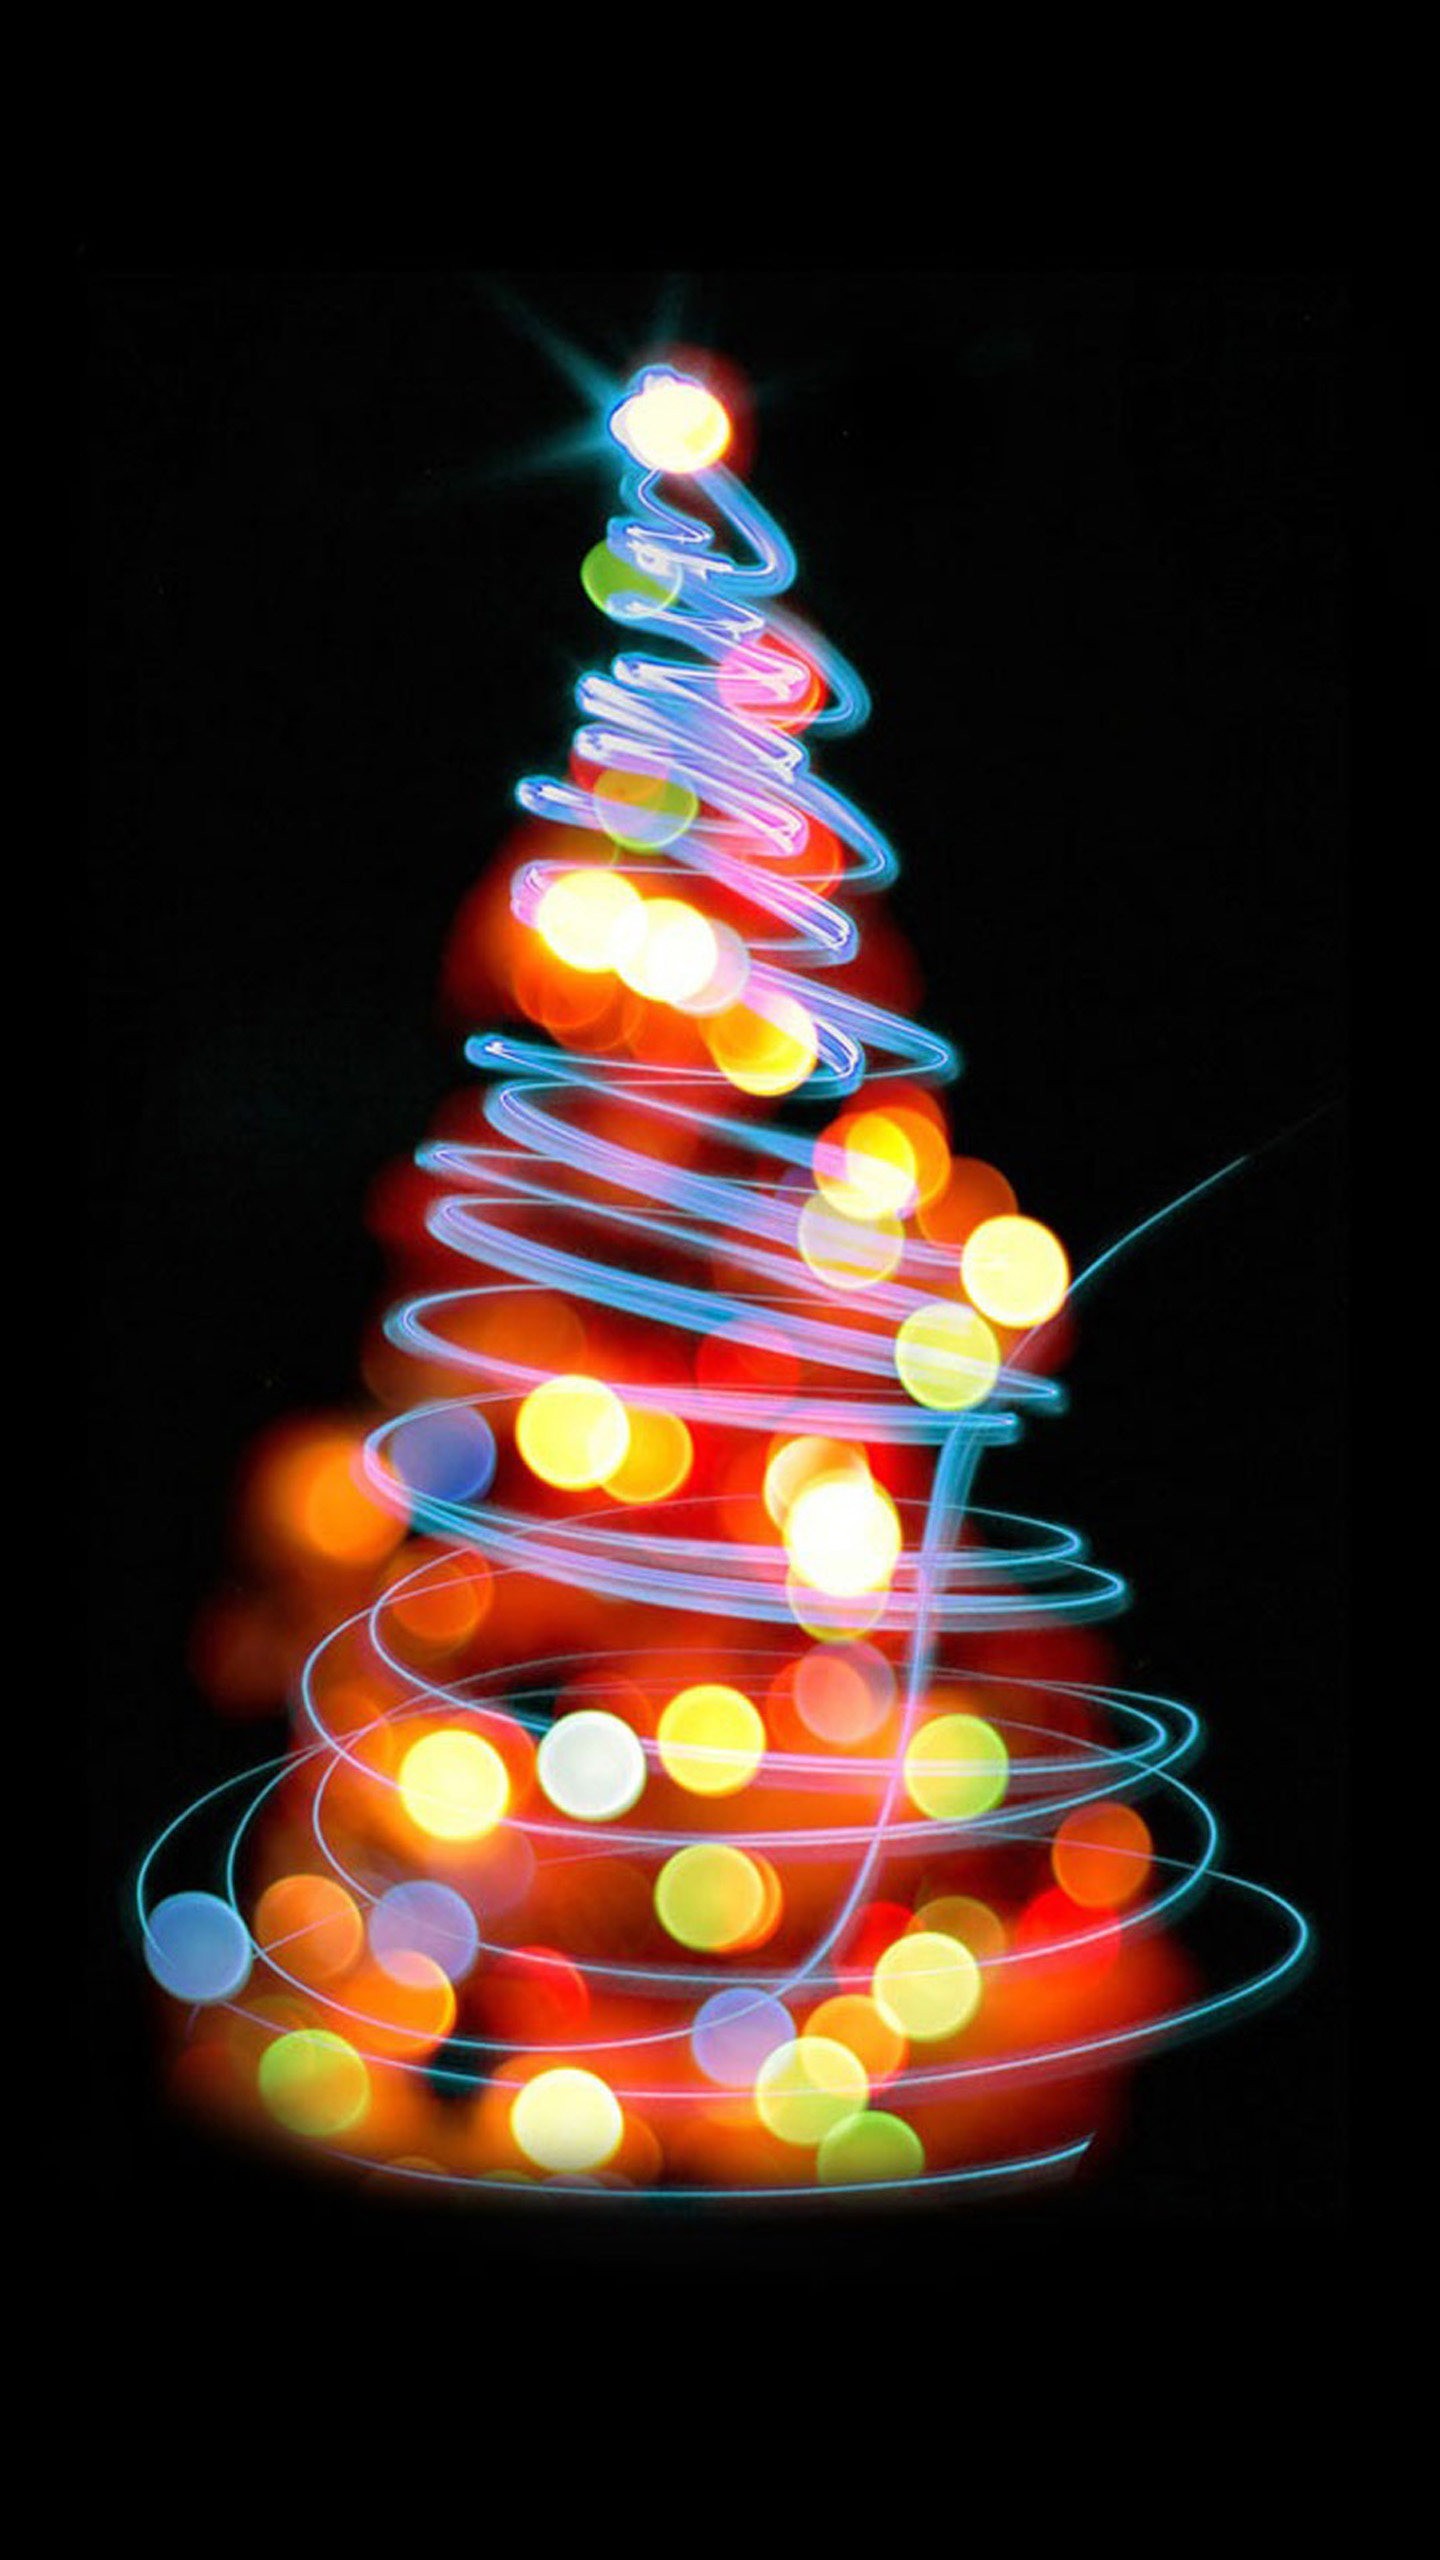 iphone 5s wallpaper hd,weihnachtsbaum,weihnachtsdekoration,baum,weihnachtsbeleuchtung,licht